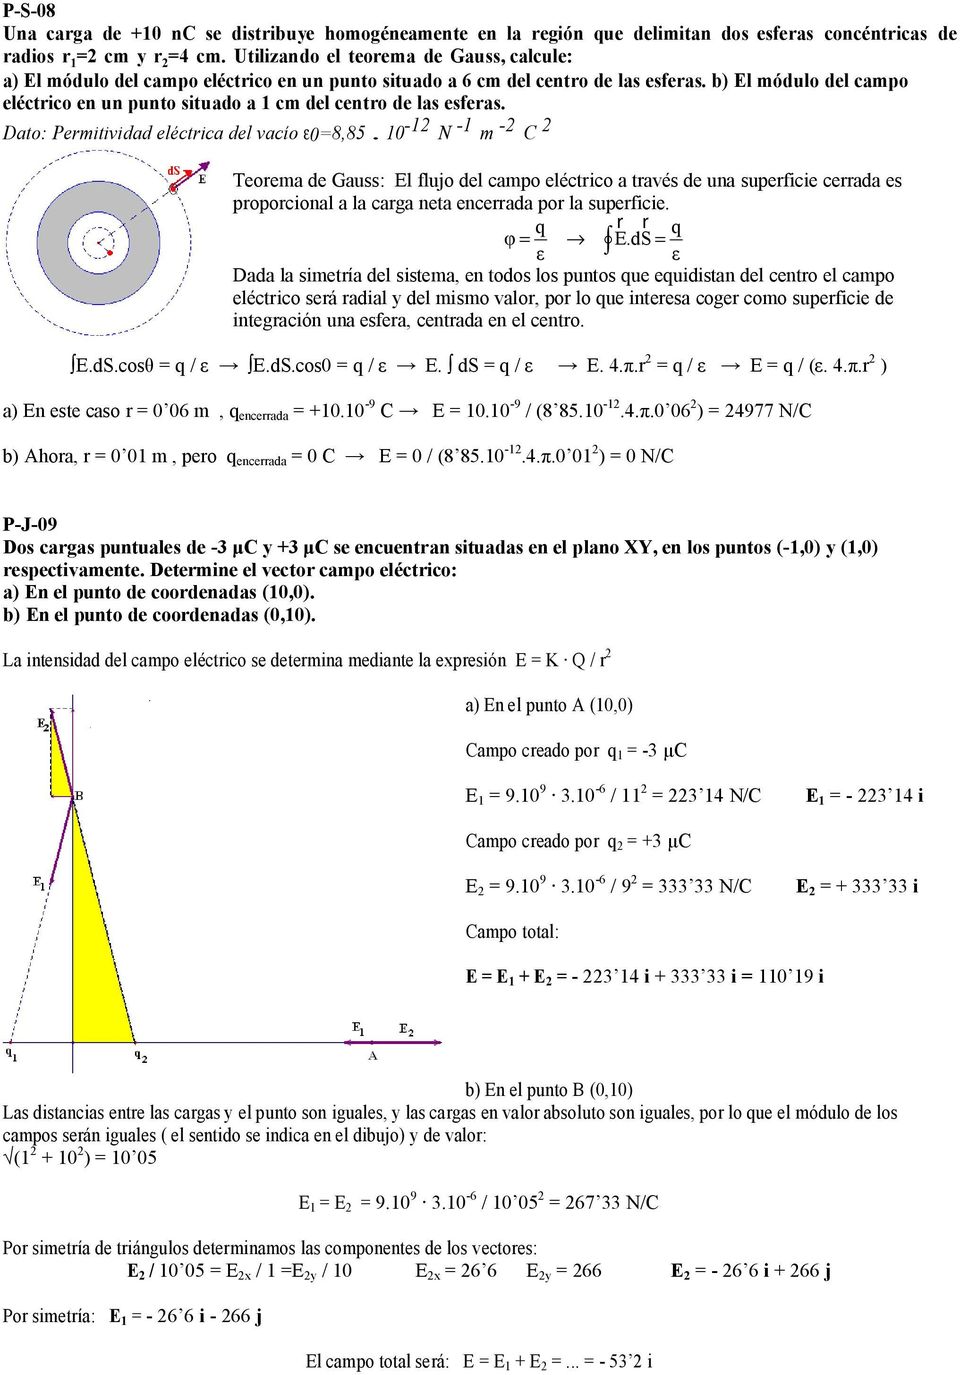 b) El módulo del campo eléctrico en un punto situado a 1 cm del centro de las esferas. Dato: Permitividad eléctrica del vacío ε0=8,85.